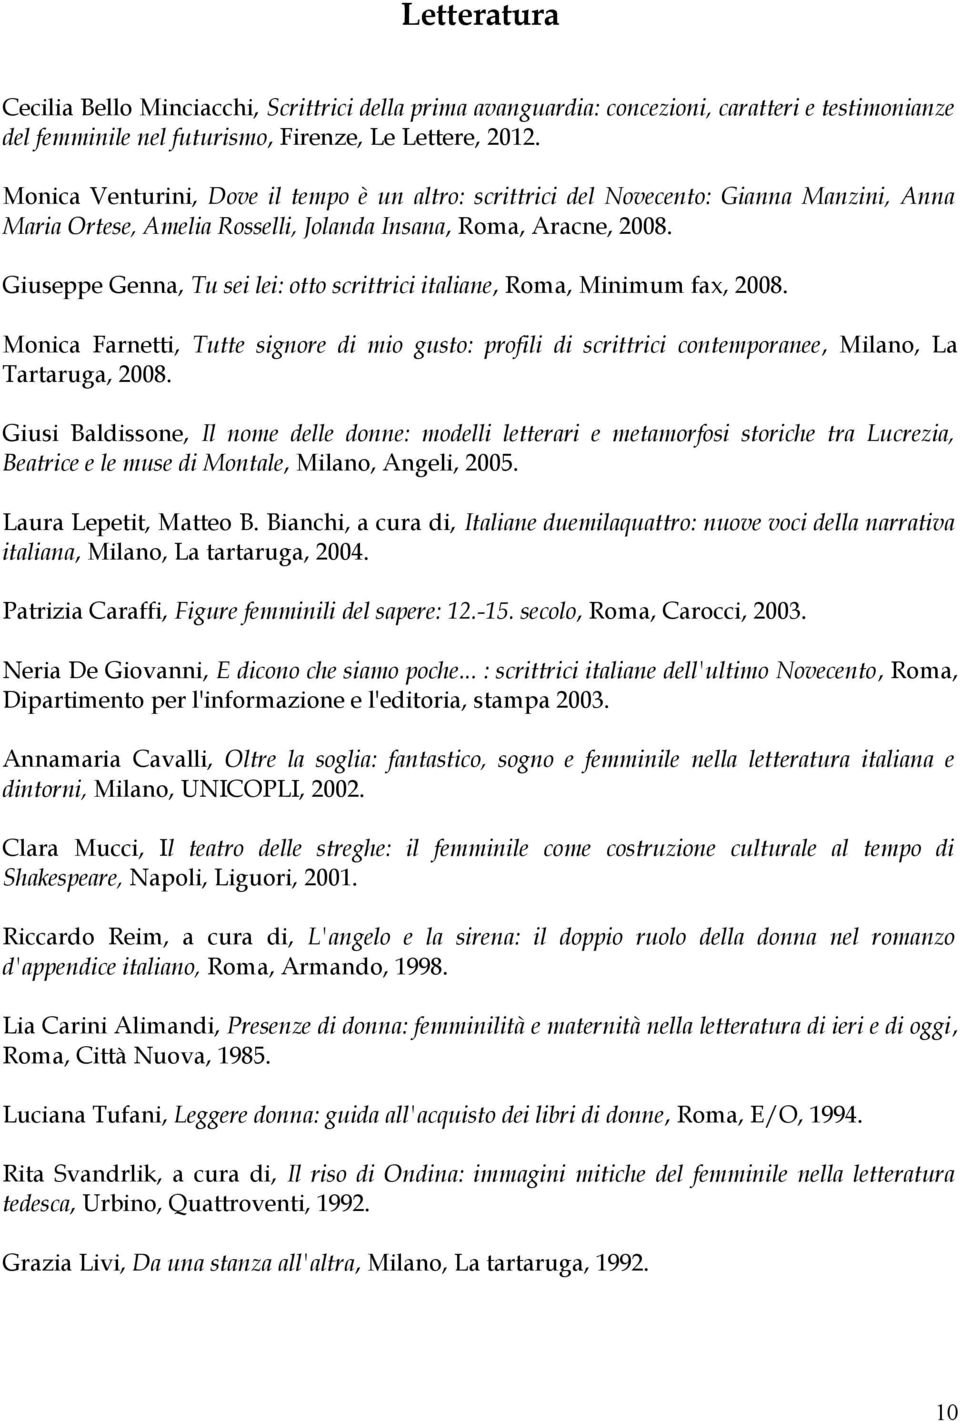 Giuseppe Genna, Tu sei lei: otto scrittrici italiane, Roma, Minimum fax, 2008. Monica Farnetti, Tutte signore di mio gusto: profili di scrittrici contemporanee, Milano, La Tartaruga, 2008.